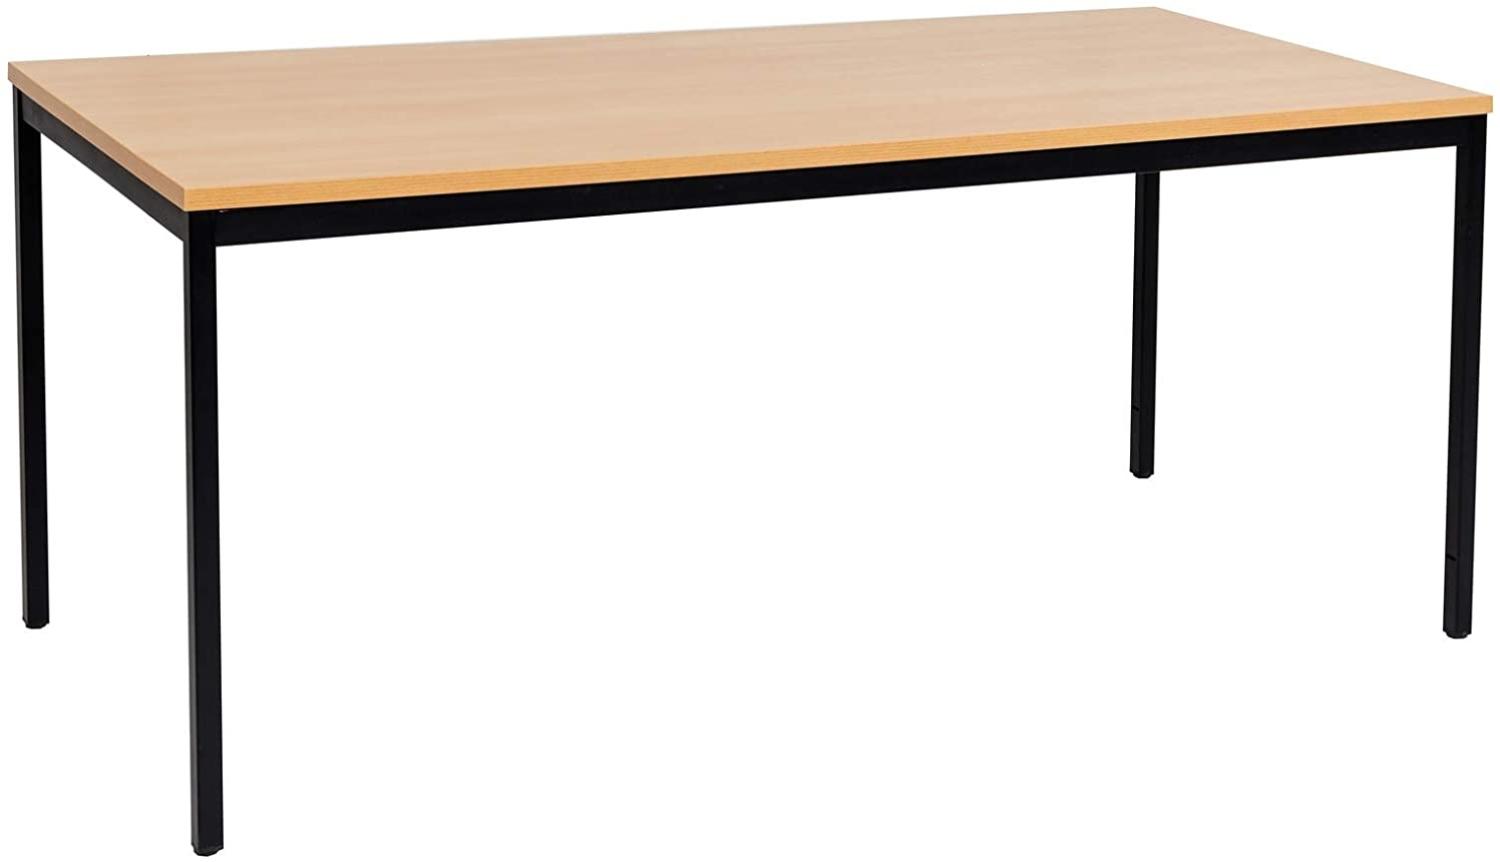 Furni24 Rechteckiger Universaltisch mit laminierter Platte Buche 180x80x75 cm, Metallgestell und niveauausgleichs Füßen, ideal im Homeoffice als Schreibtisch, Konferenztisch, Computertisch, Esstisch Bild 1